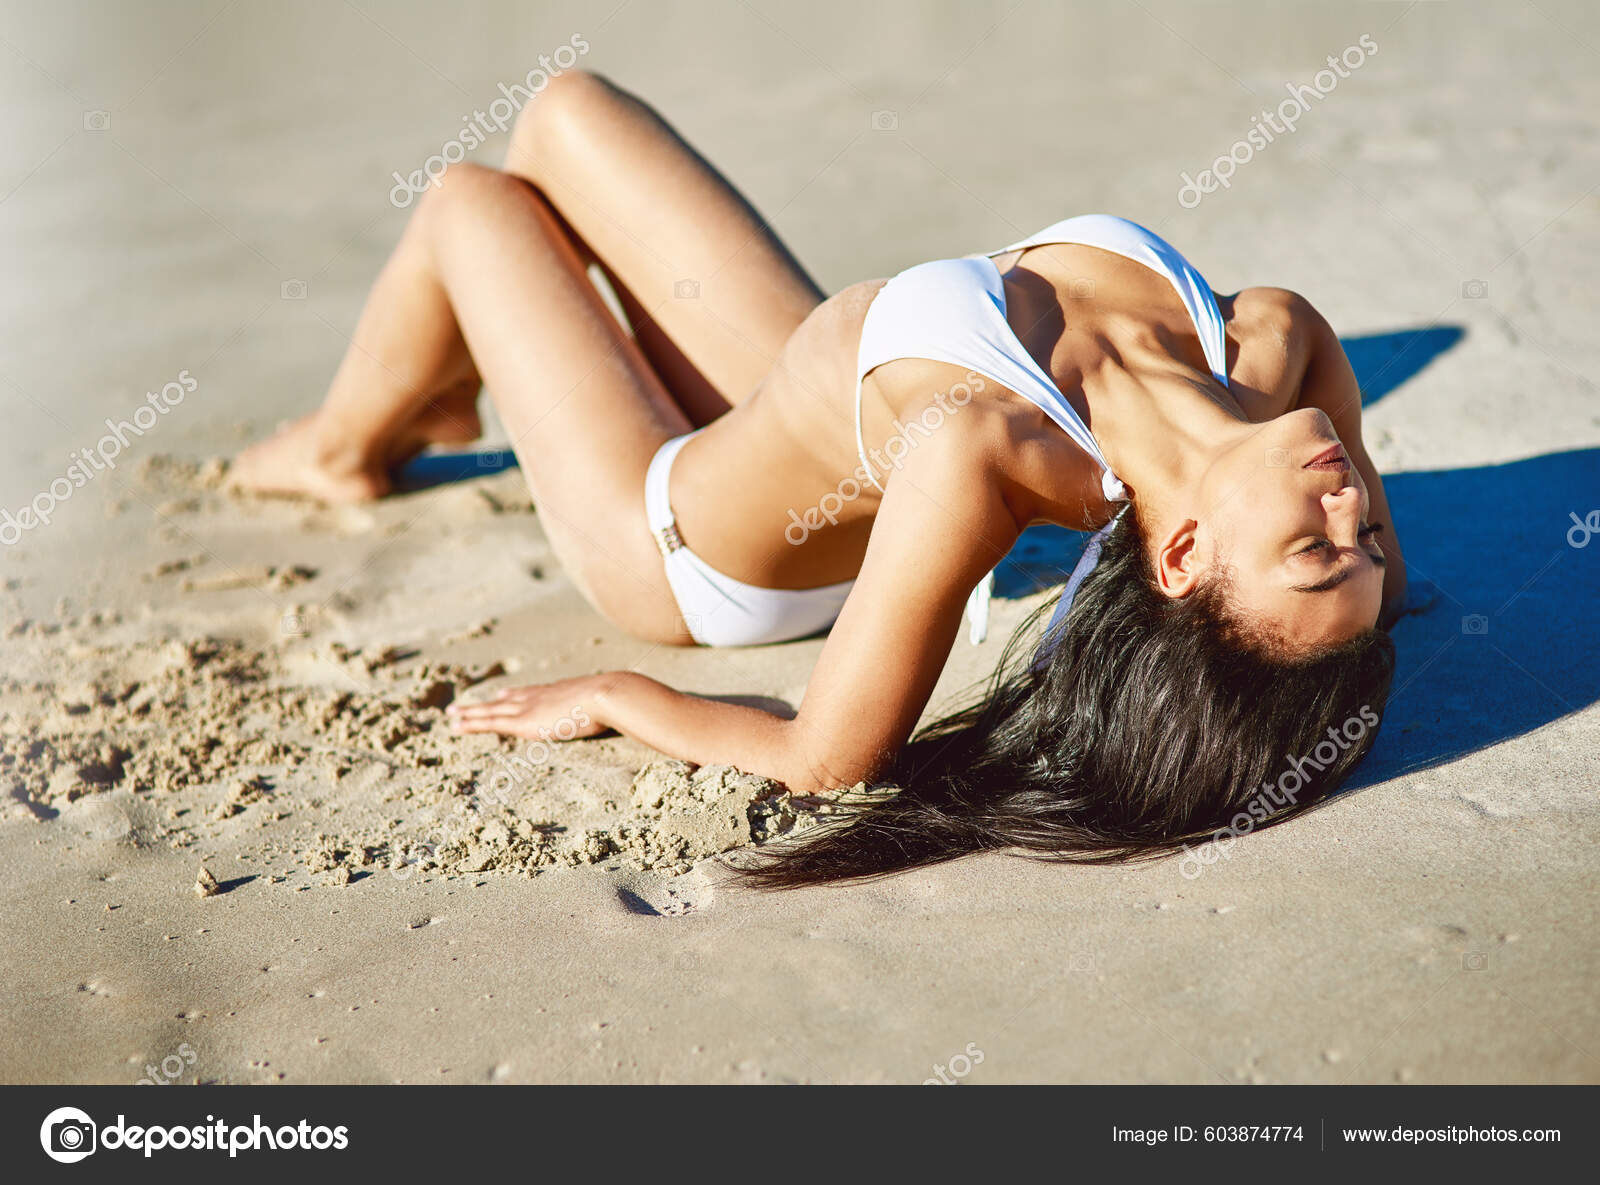 You Venus Beautiful Young Woman White Bikini Posing Beach fotos, imagens de  © PeopleImages.com #603874774